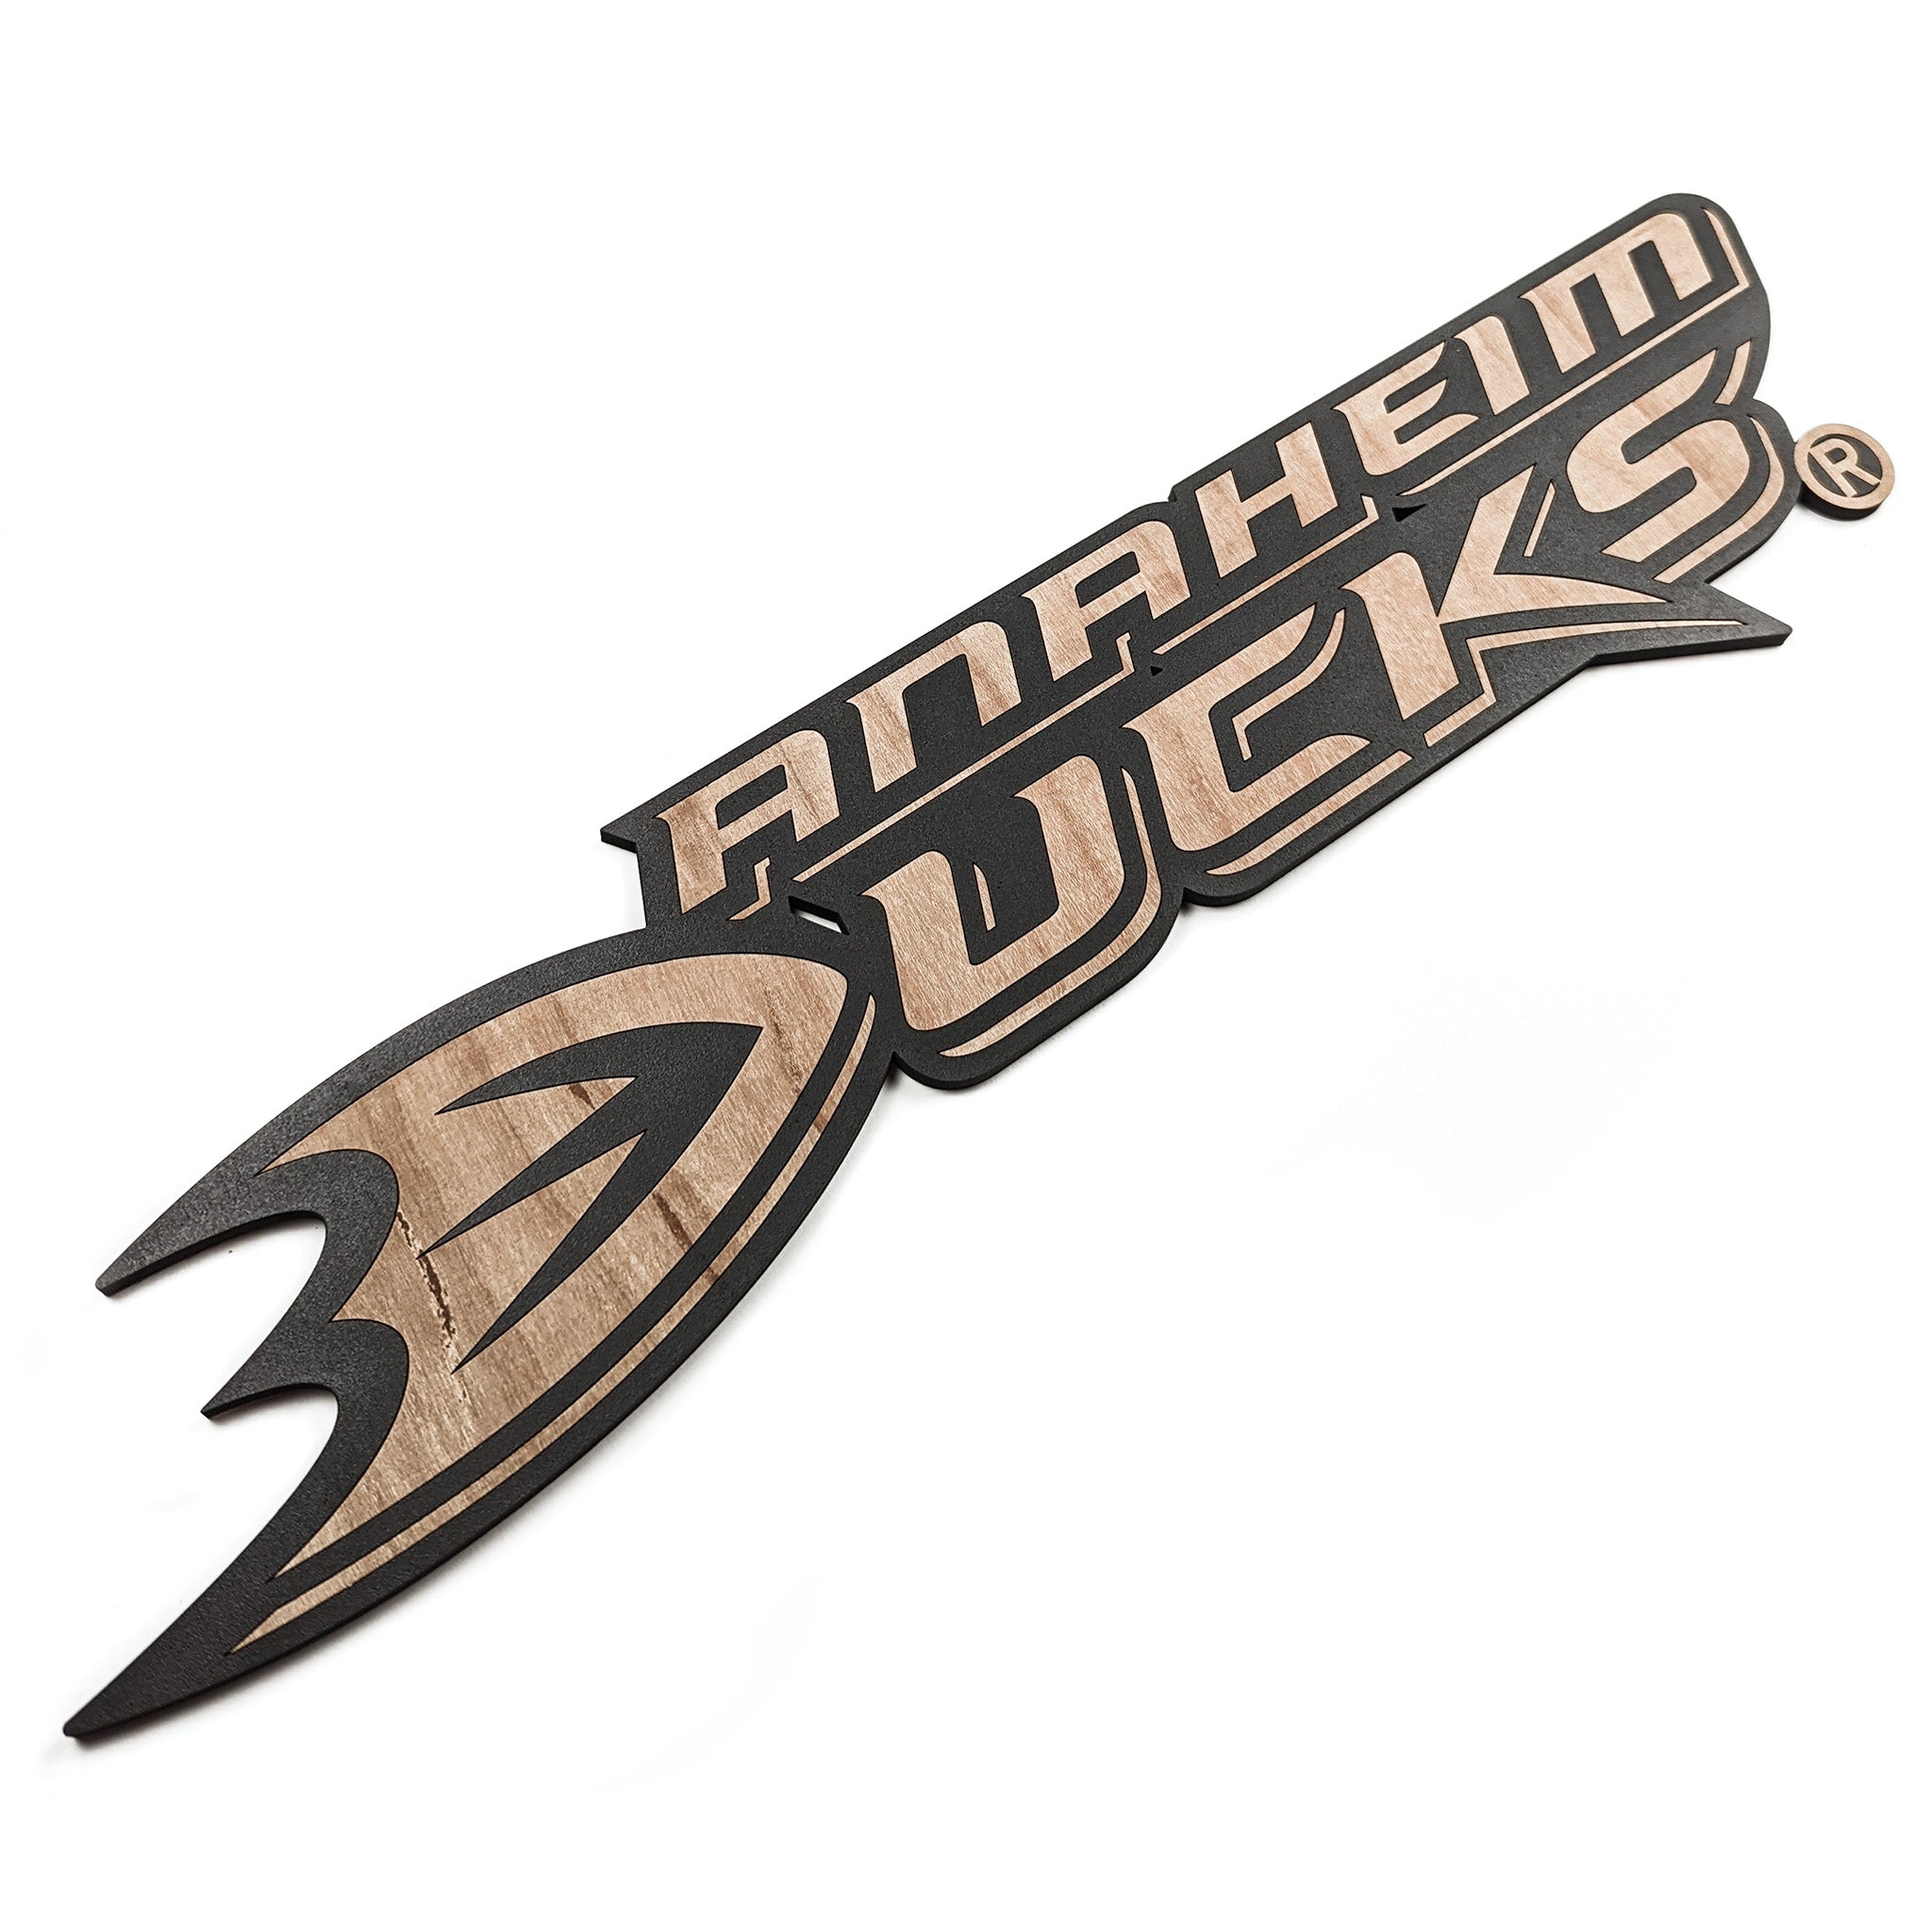 New Jersey Devils Team Wordmark – WoodJerseys